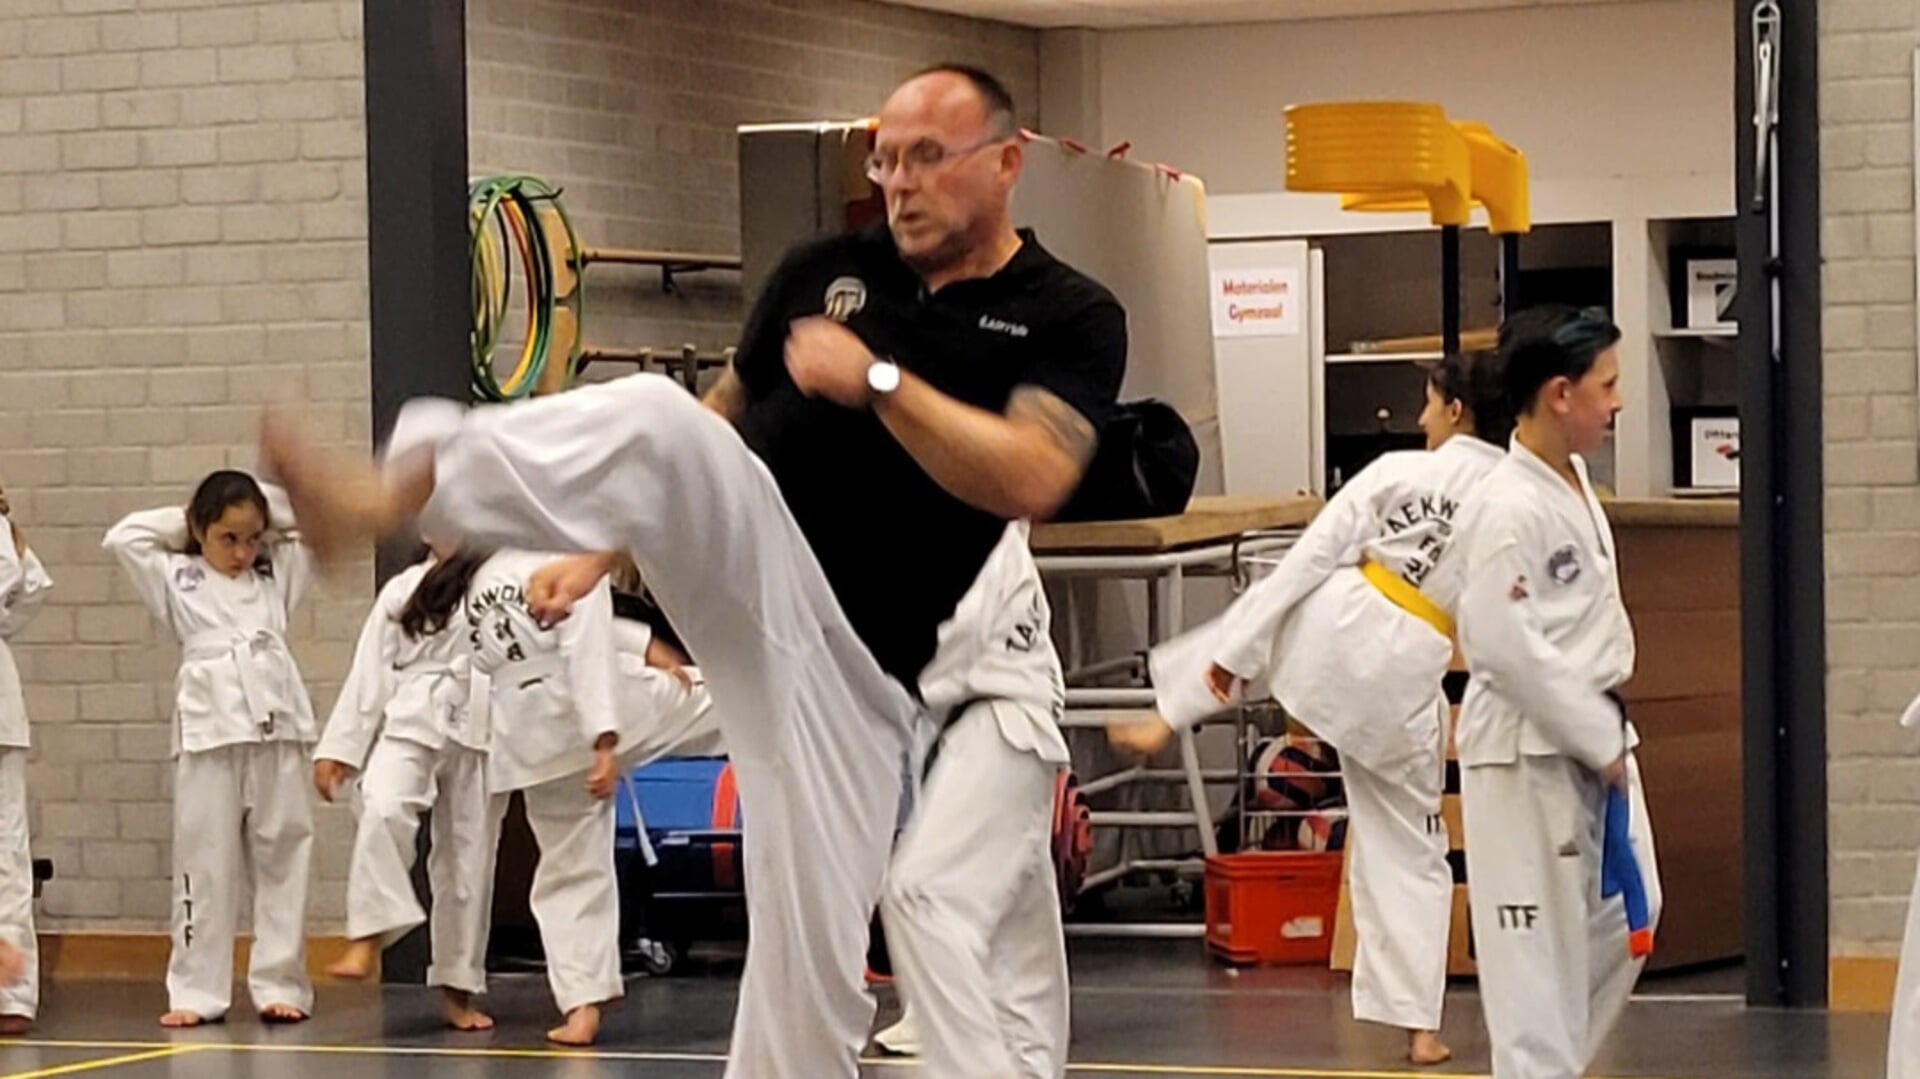 Ad Dekker runt al 34 jaar een eigen taekwondoschool. Voor zijn verdiensten binnen de sport wordt hij opgenomen in de internationale hall of fame. 